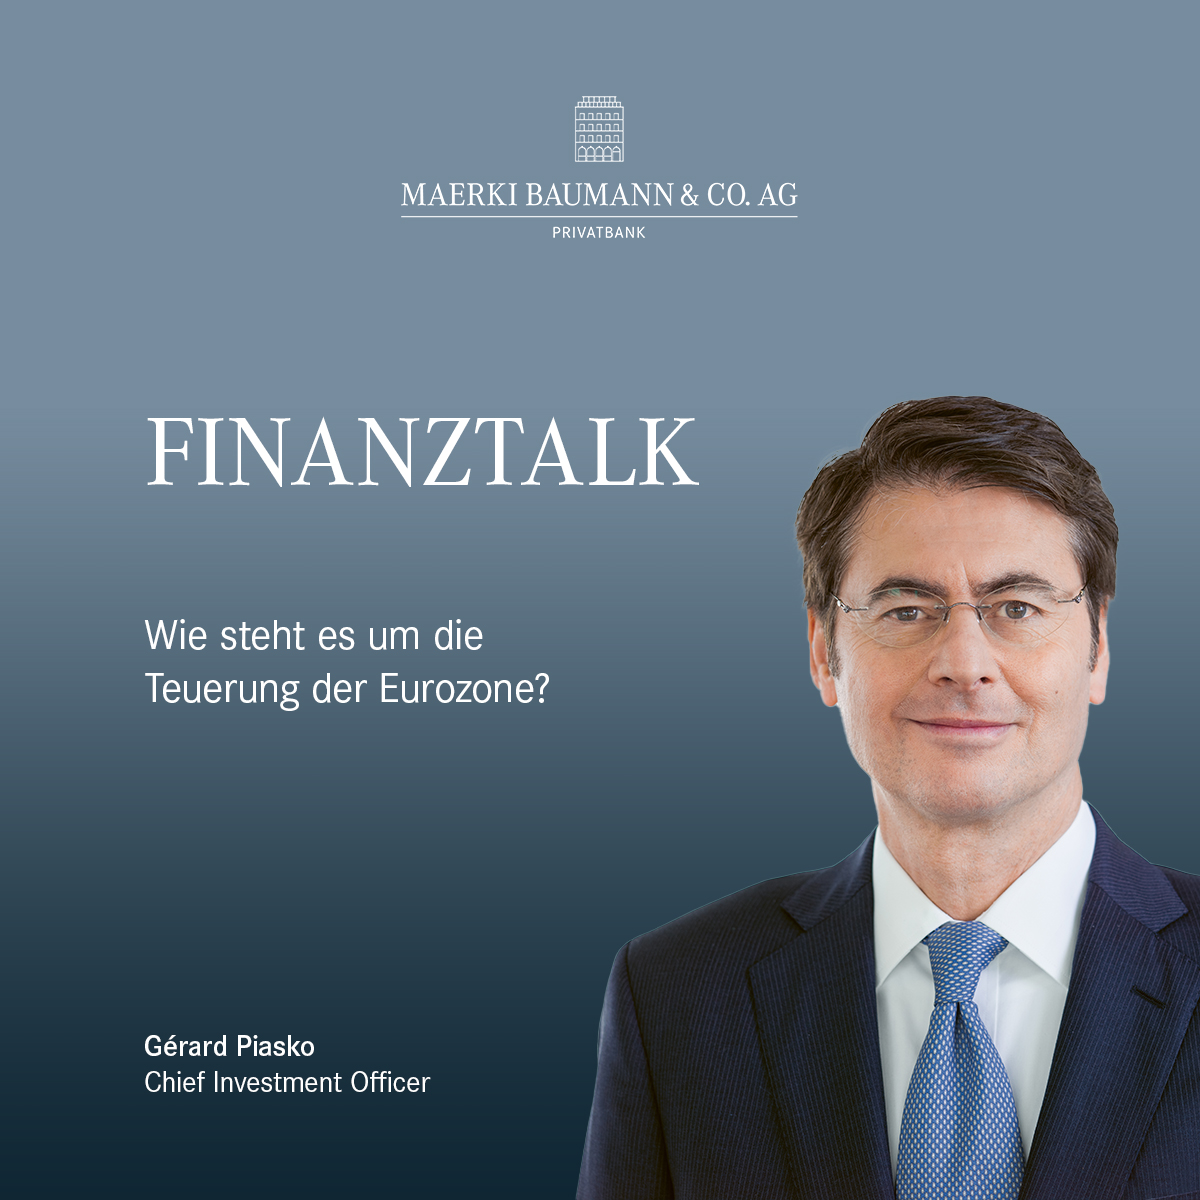 🎵 Finanztalk: Wie steht es um die Teuerung der Eurozone? 🎙️ Radio 1 Moderator Marc Jäggi im Gespräch mit unserem CIO Gérard Piasko: bit.ly/43FIgha #Podcast #MaerkiBaumannCoAG #Radio1 #Economy #Eurozone #Inflation #Interview